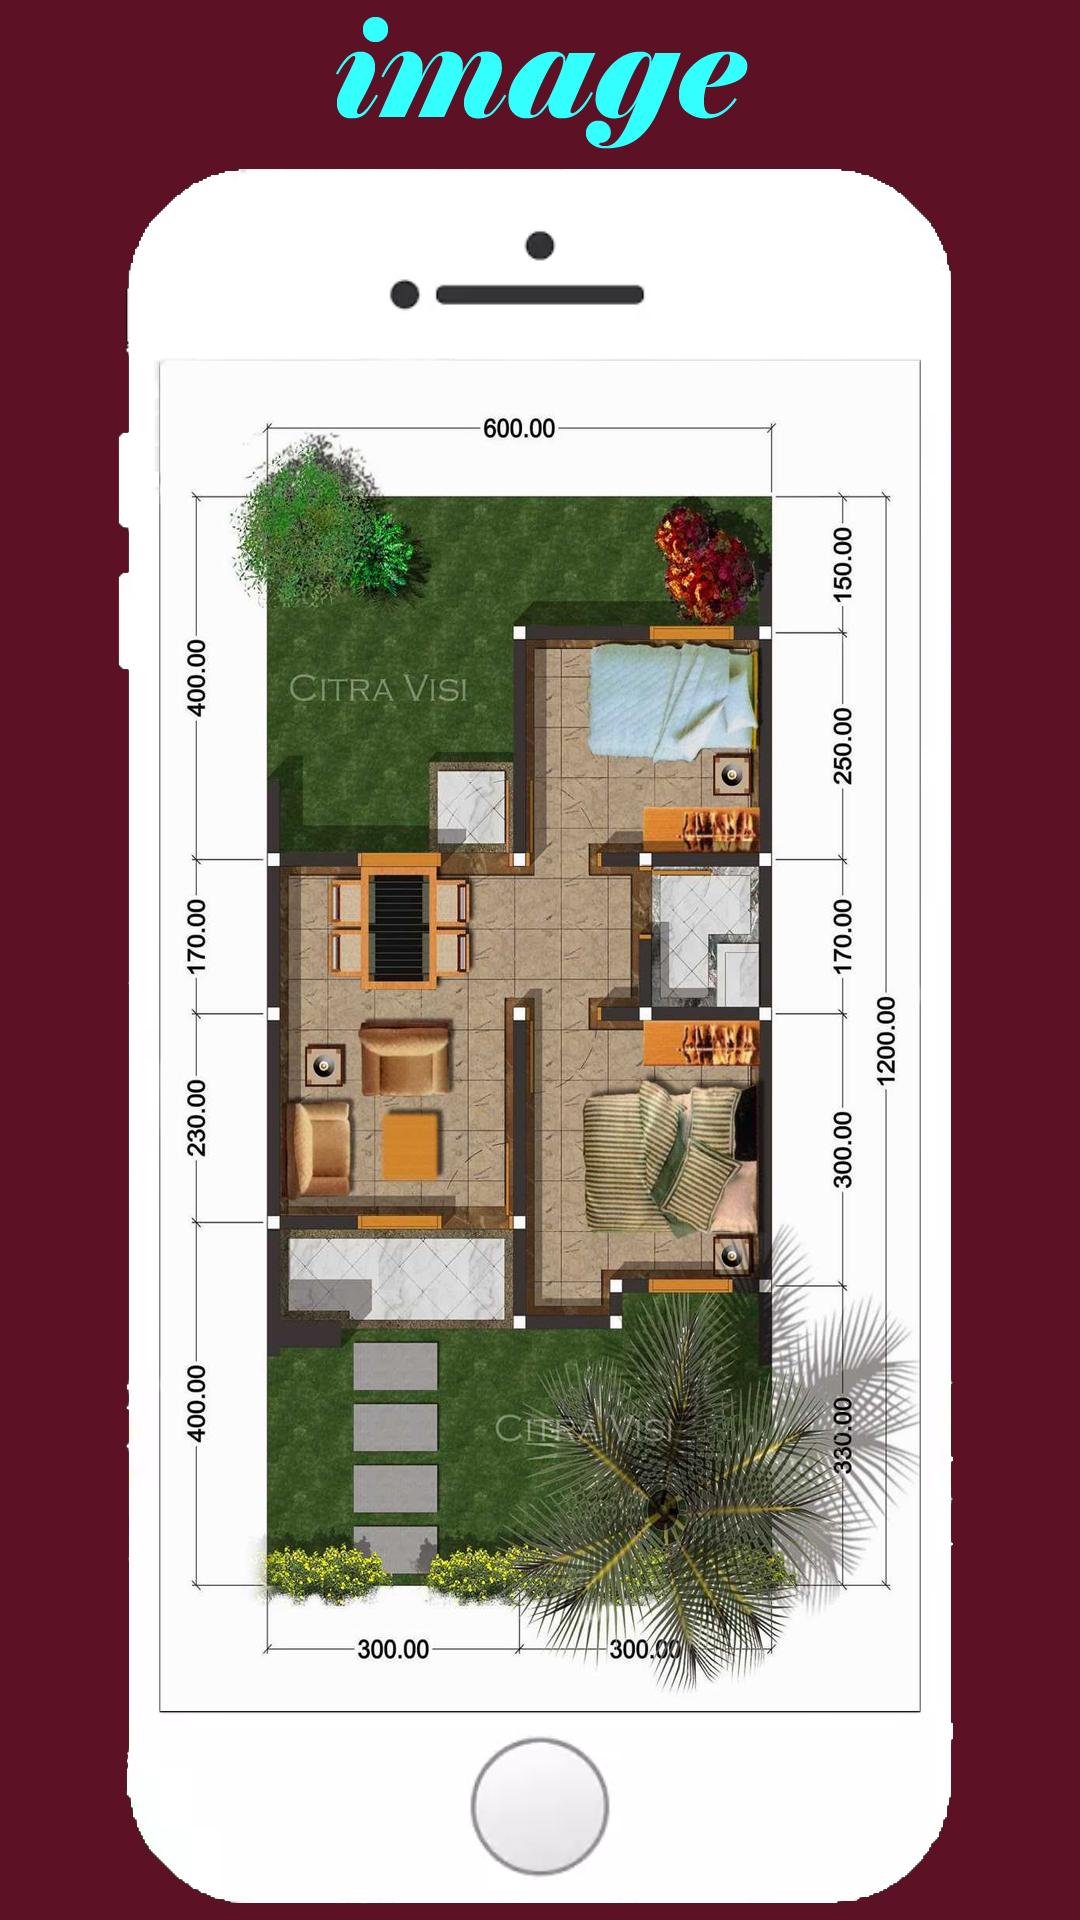 Desain Denah Rumah For Android APK Download